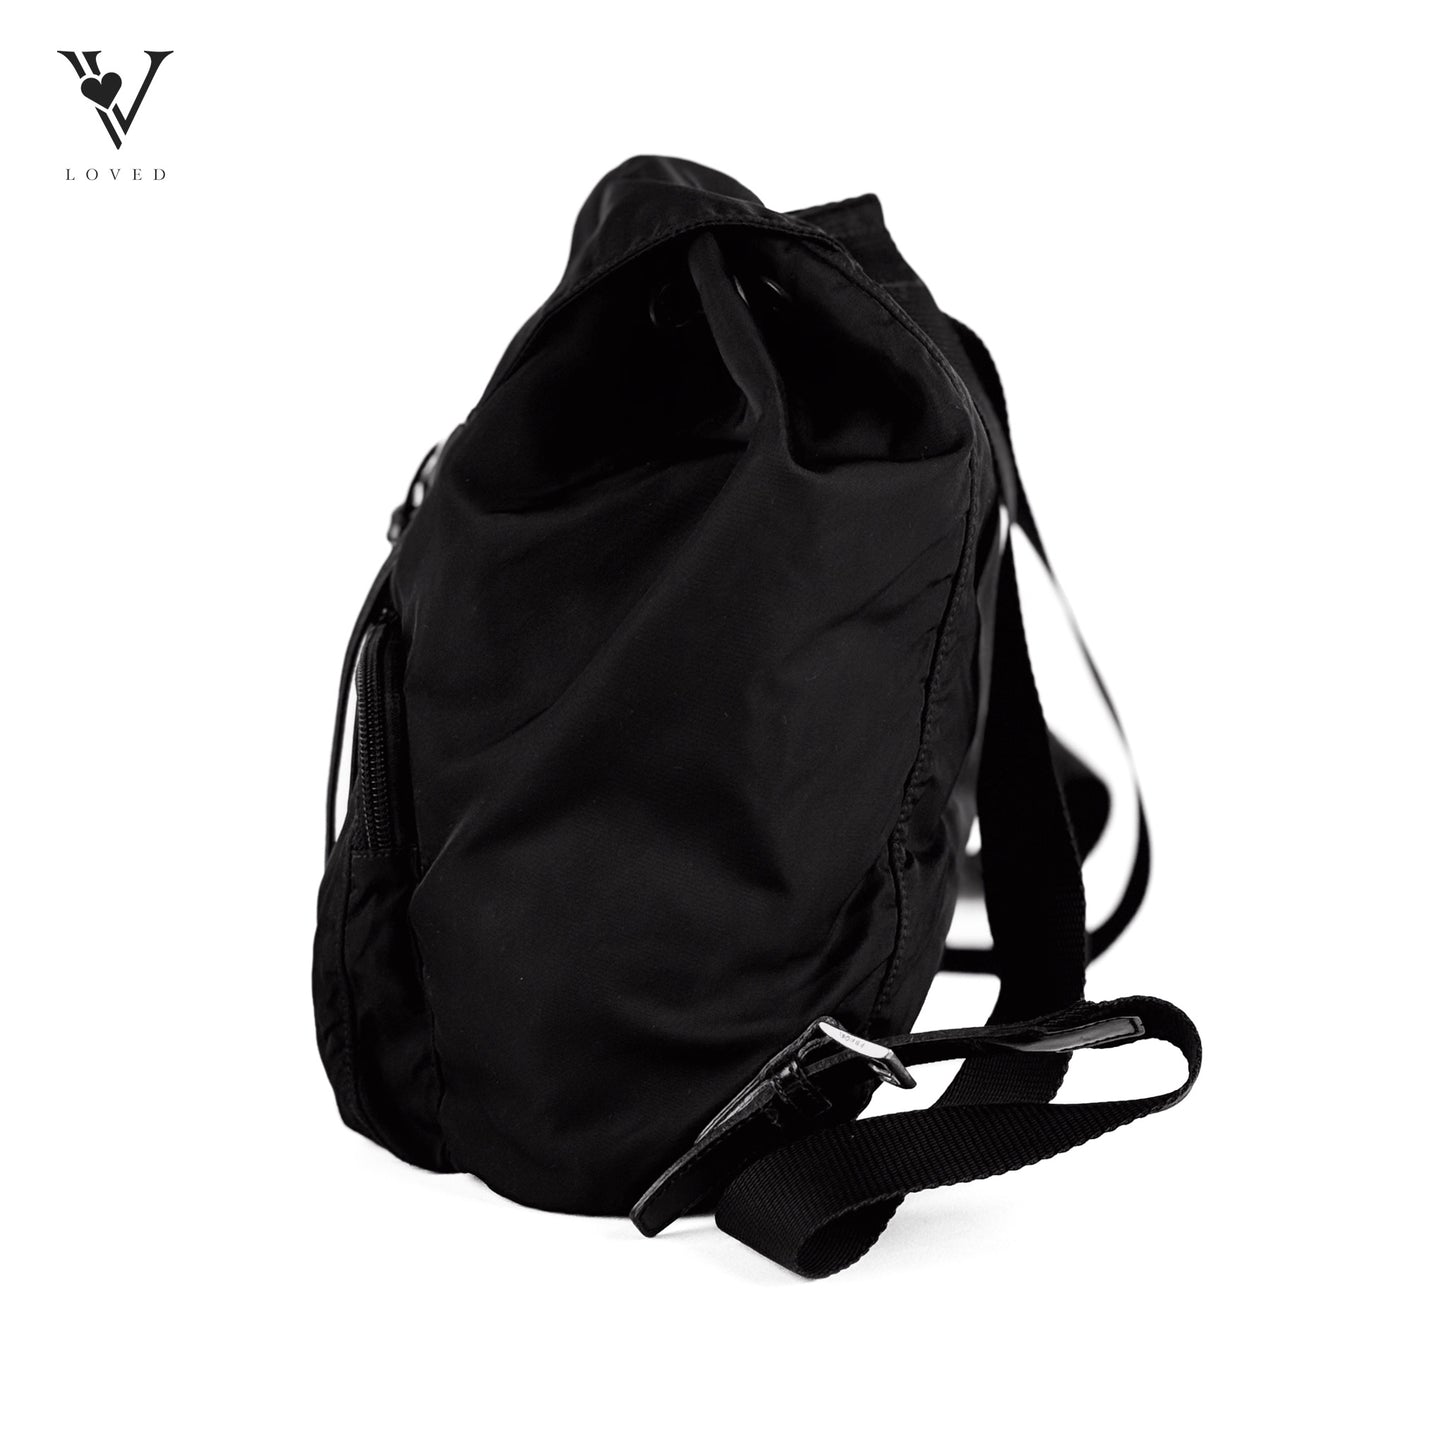 Re-Nylon backpack